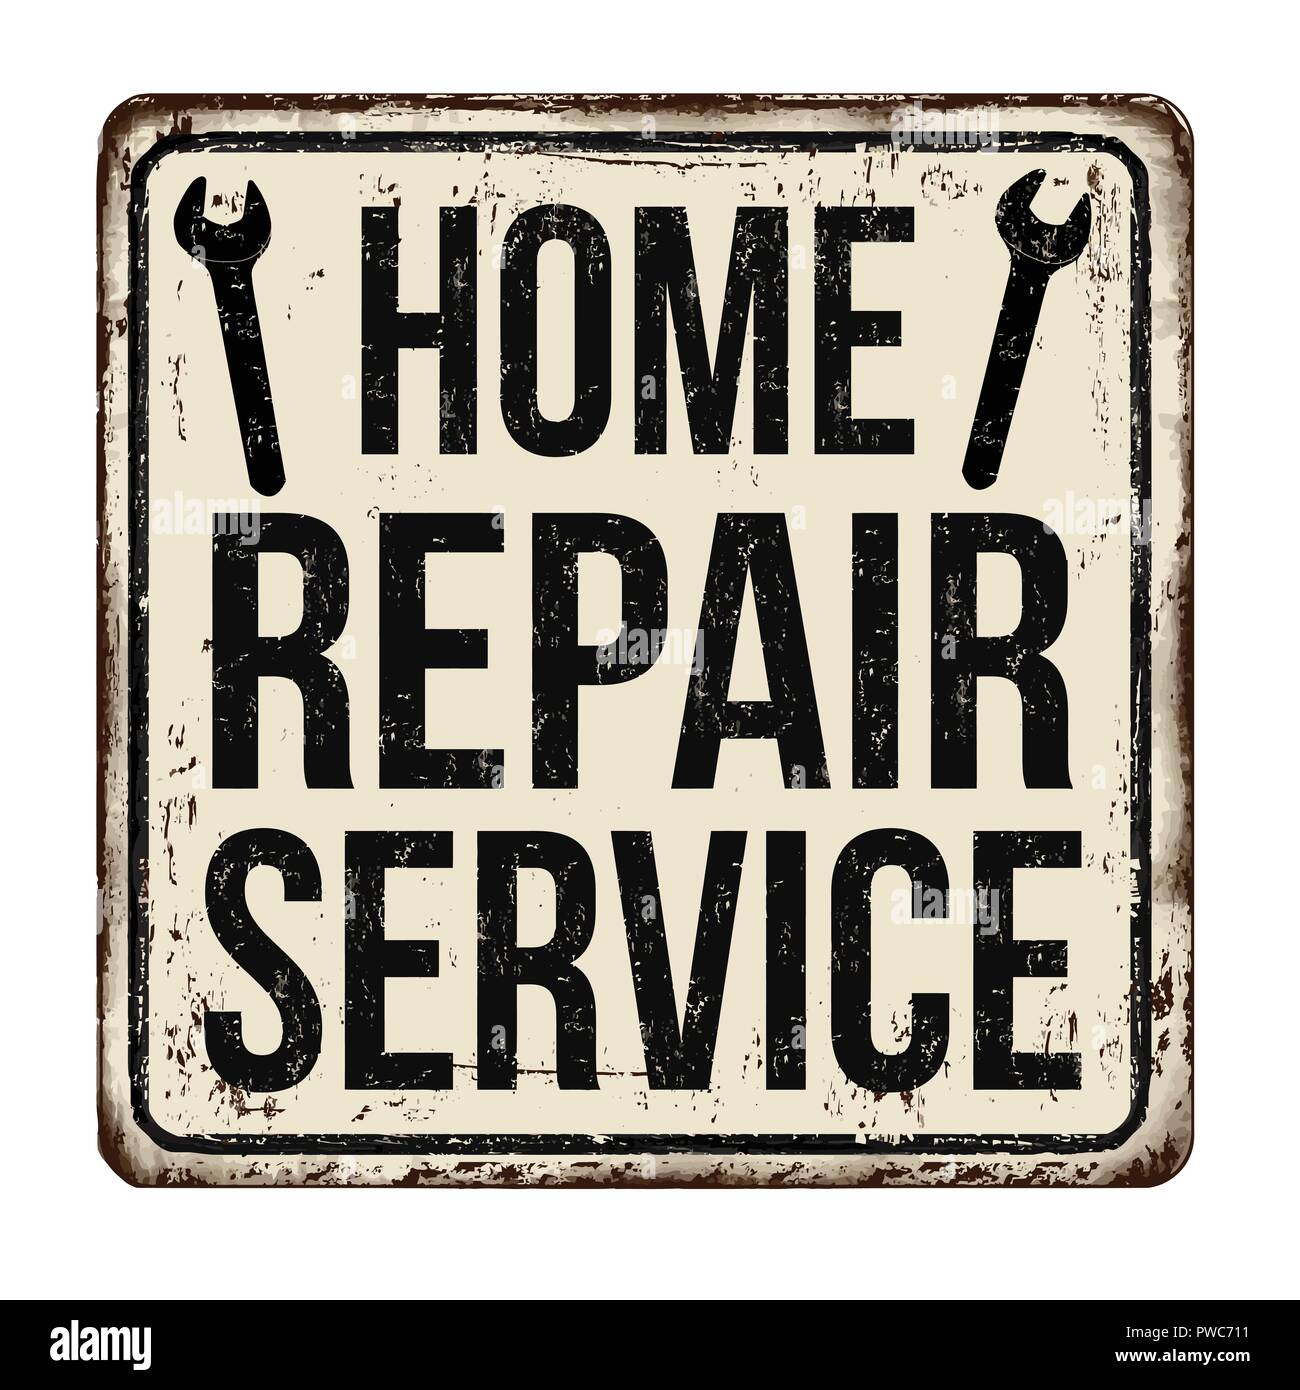 Home Reparatur Service Oldtimer rostiges Metall Zeichen auf weißem Hintergrund, Vector Illustration Stock Vektor